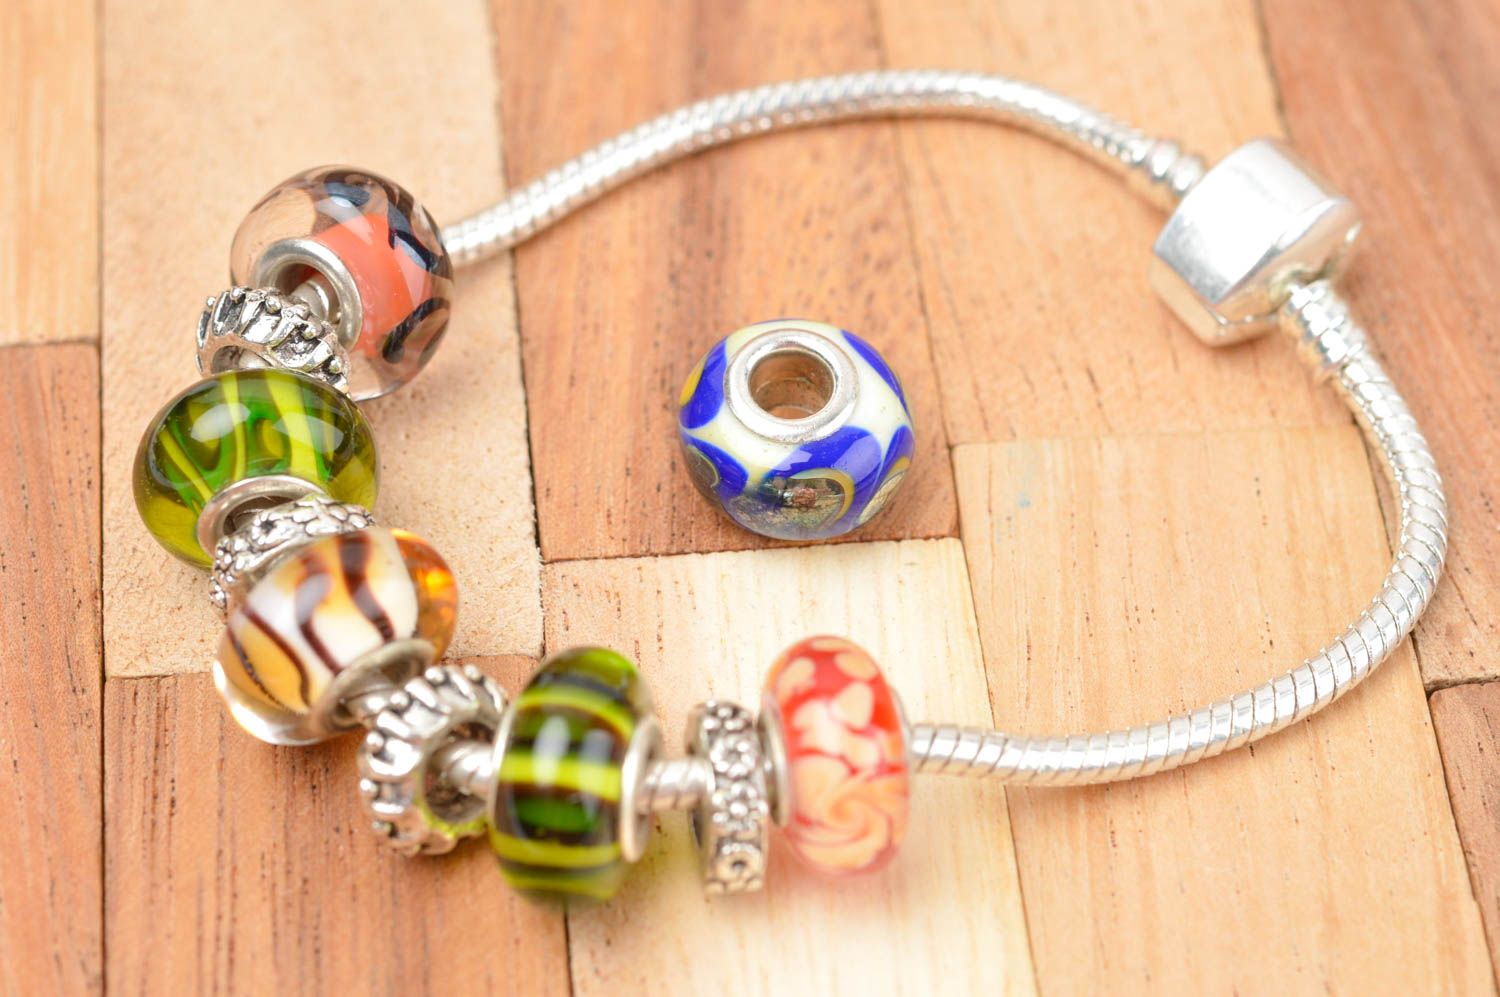 Stylish handmade glass bead jewelry making ideas art and craft small gifts photo 4